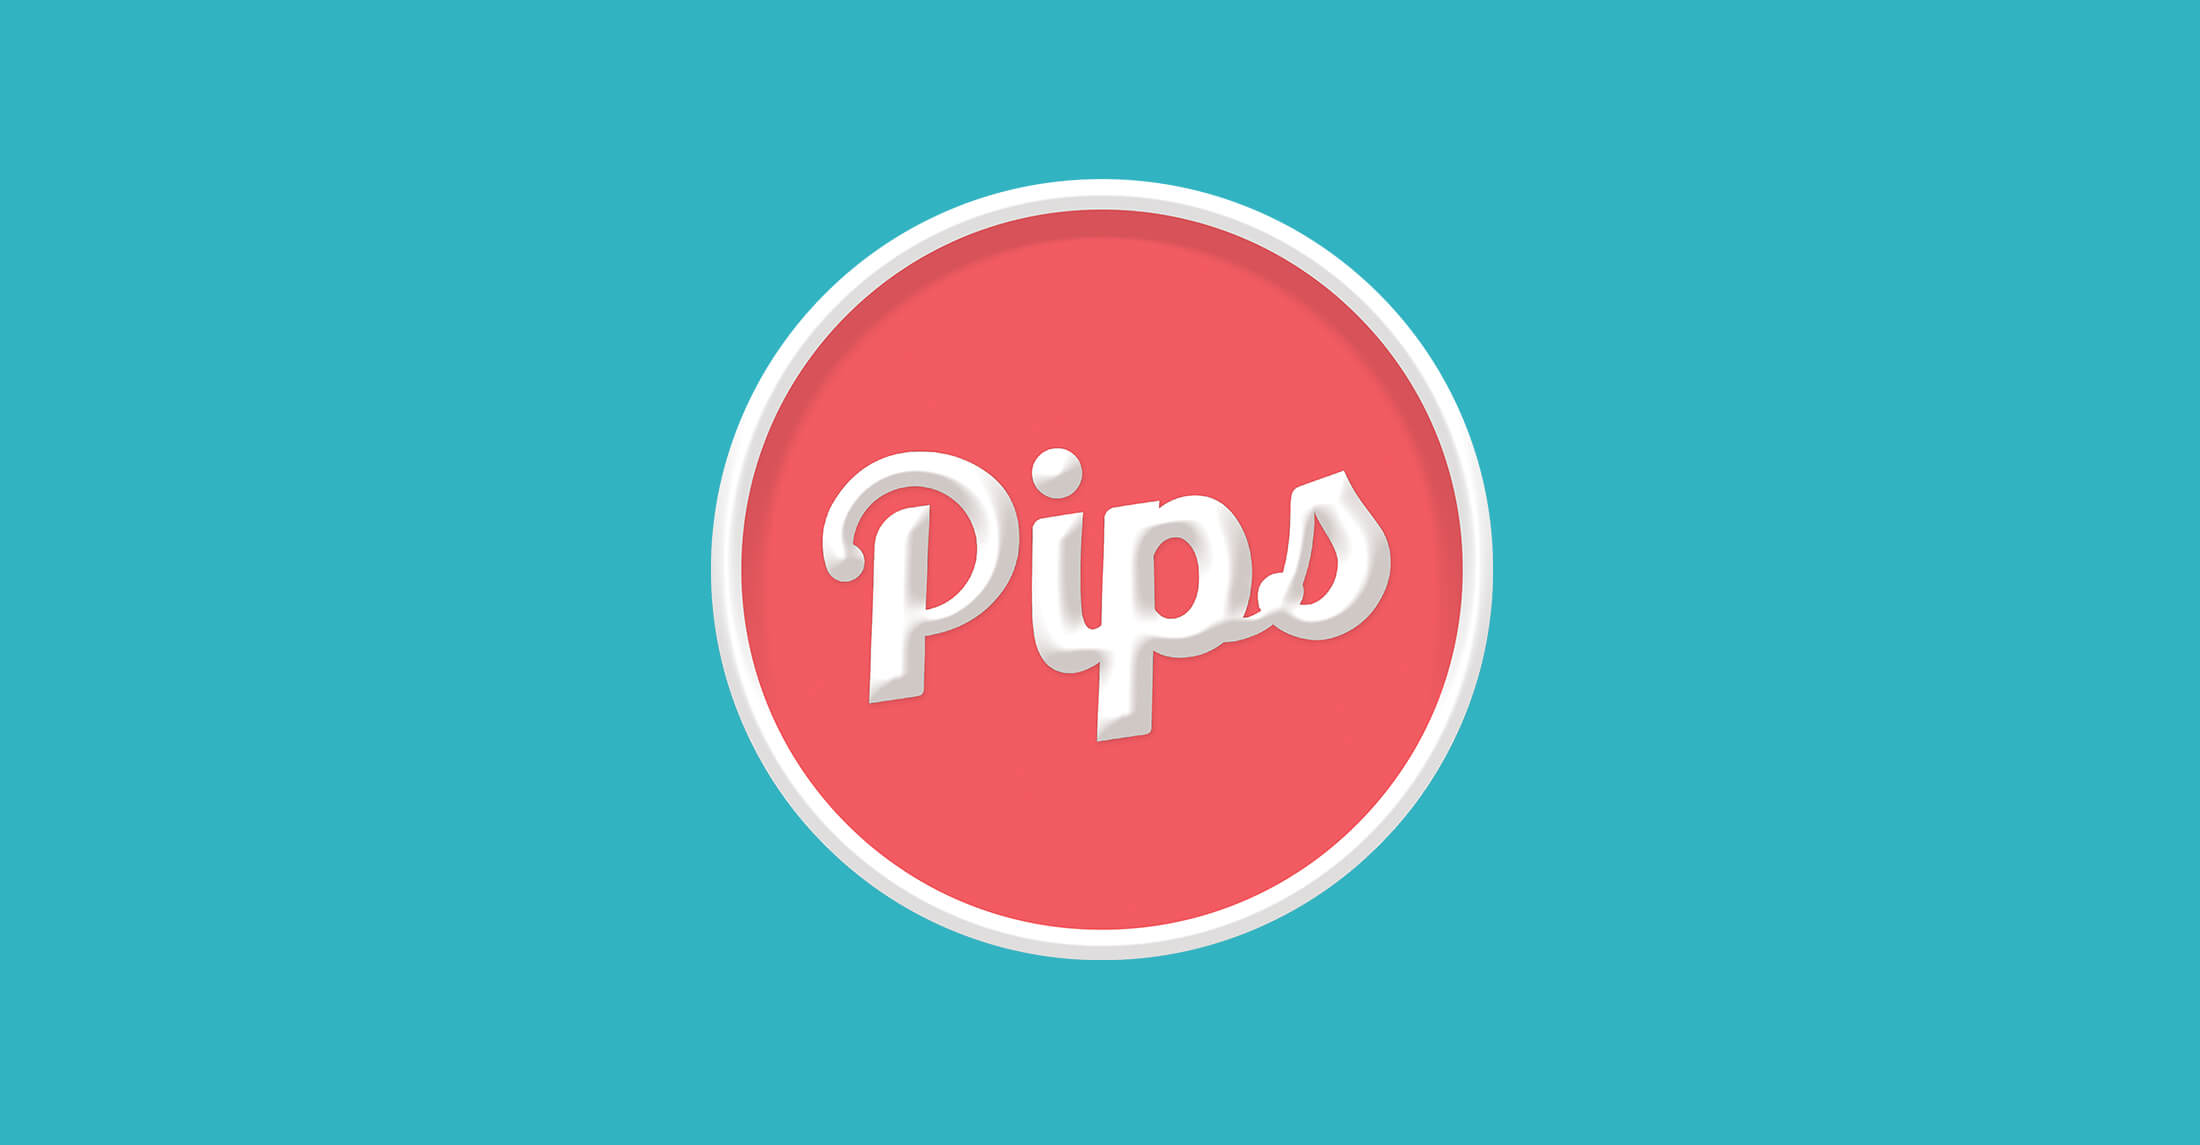 Pips_logo